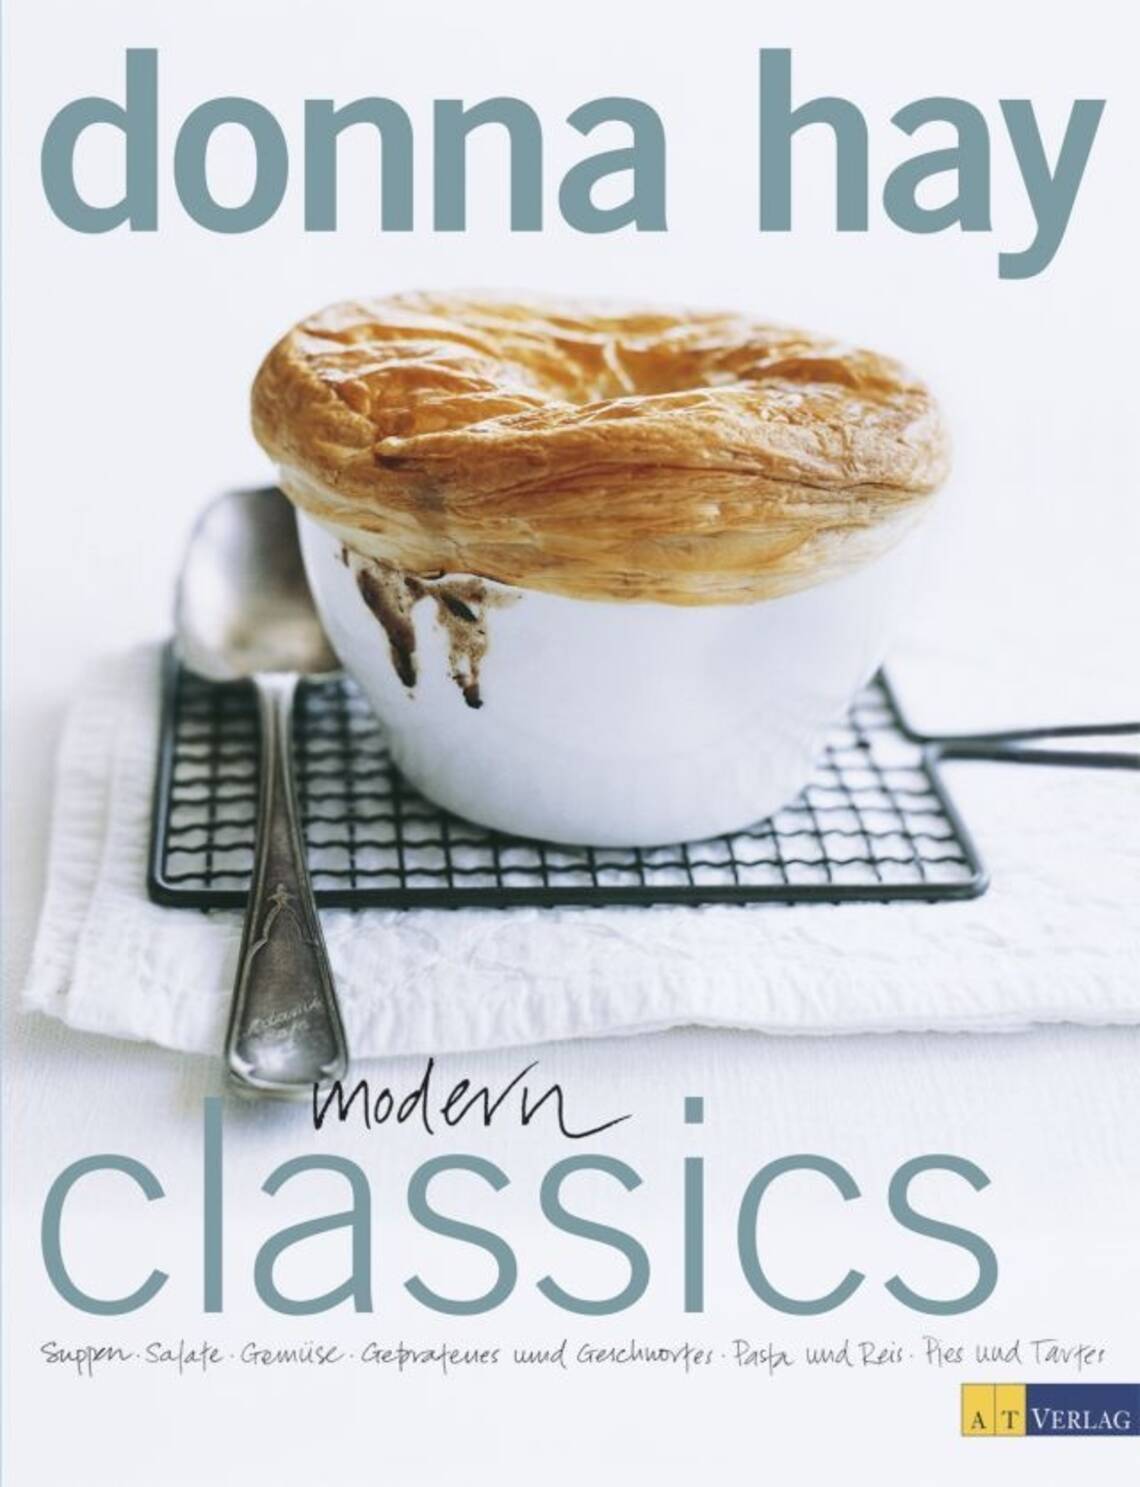 Modern Classics von Donna Hay